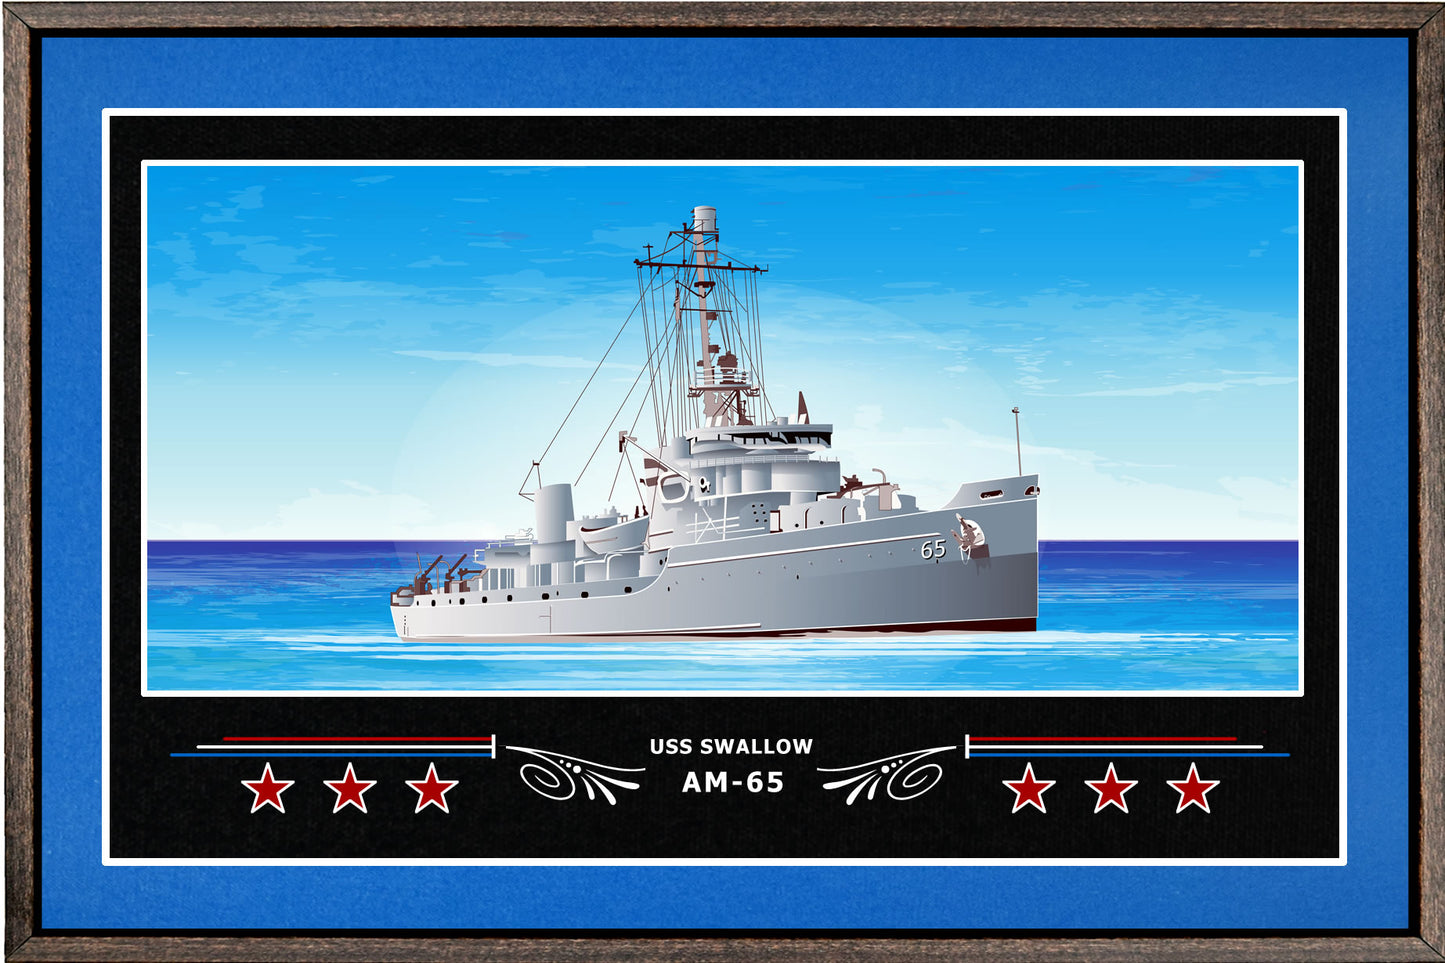 USS SWALLOW AM 65 BOX FRAMED CANVAS ART BLUE